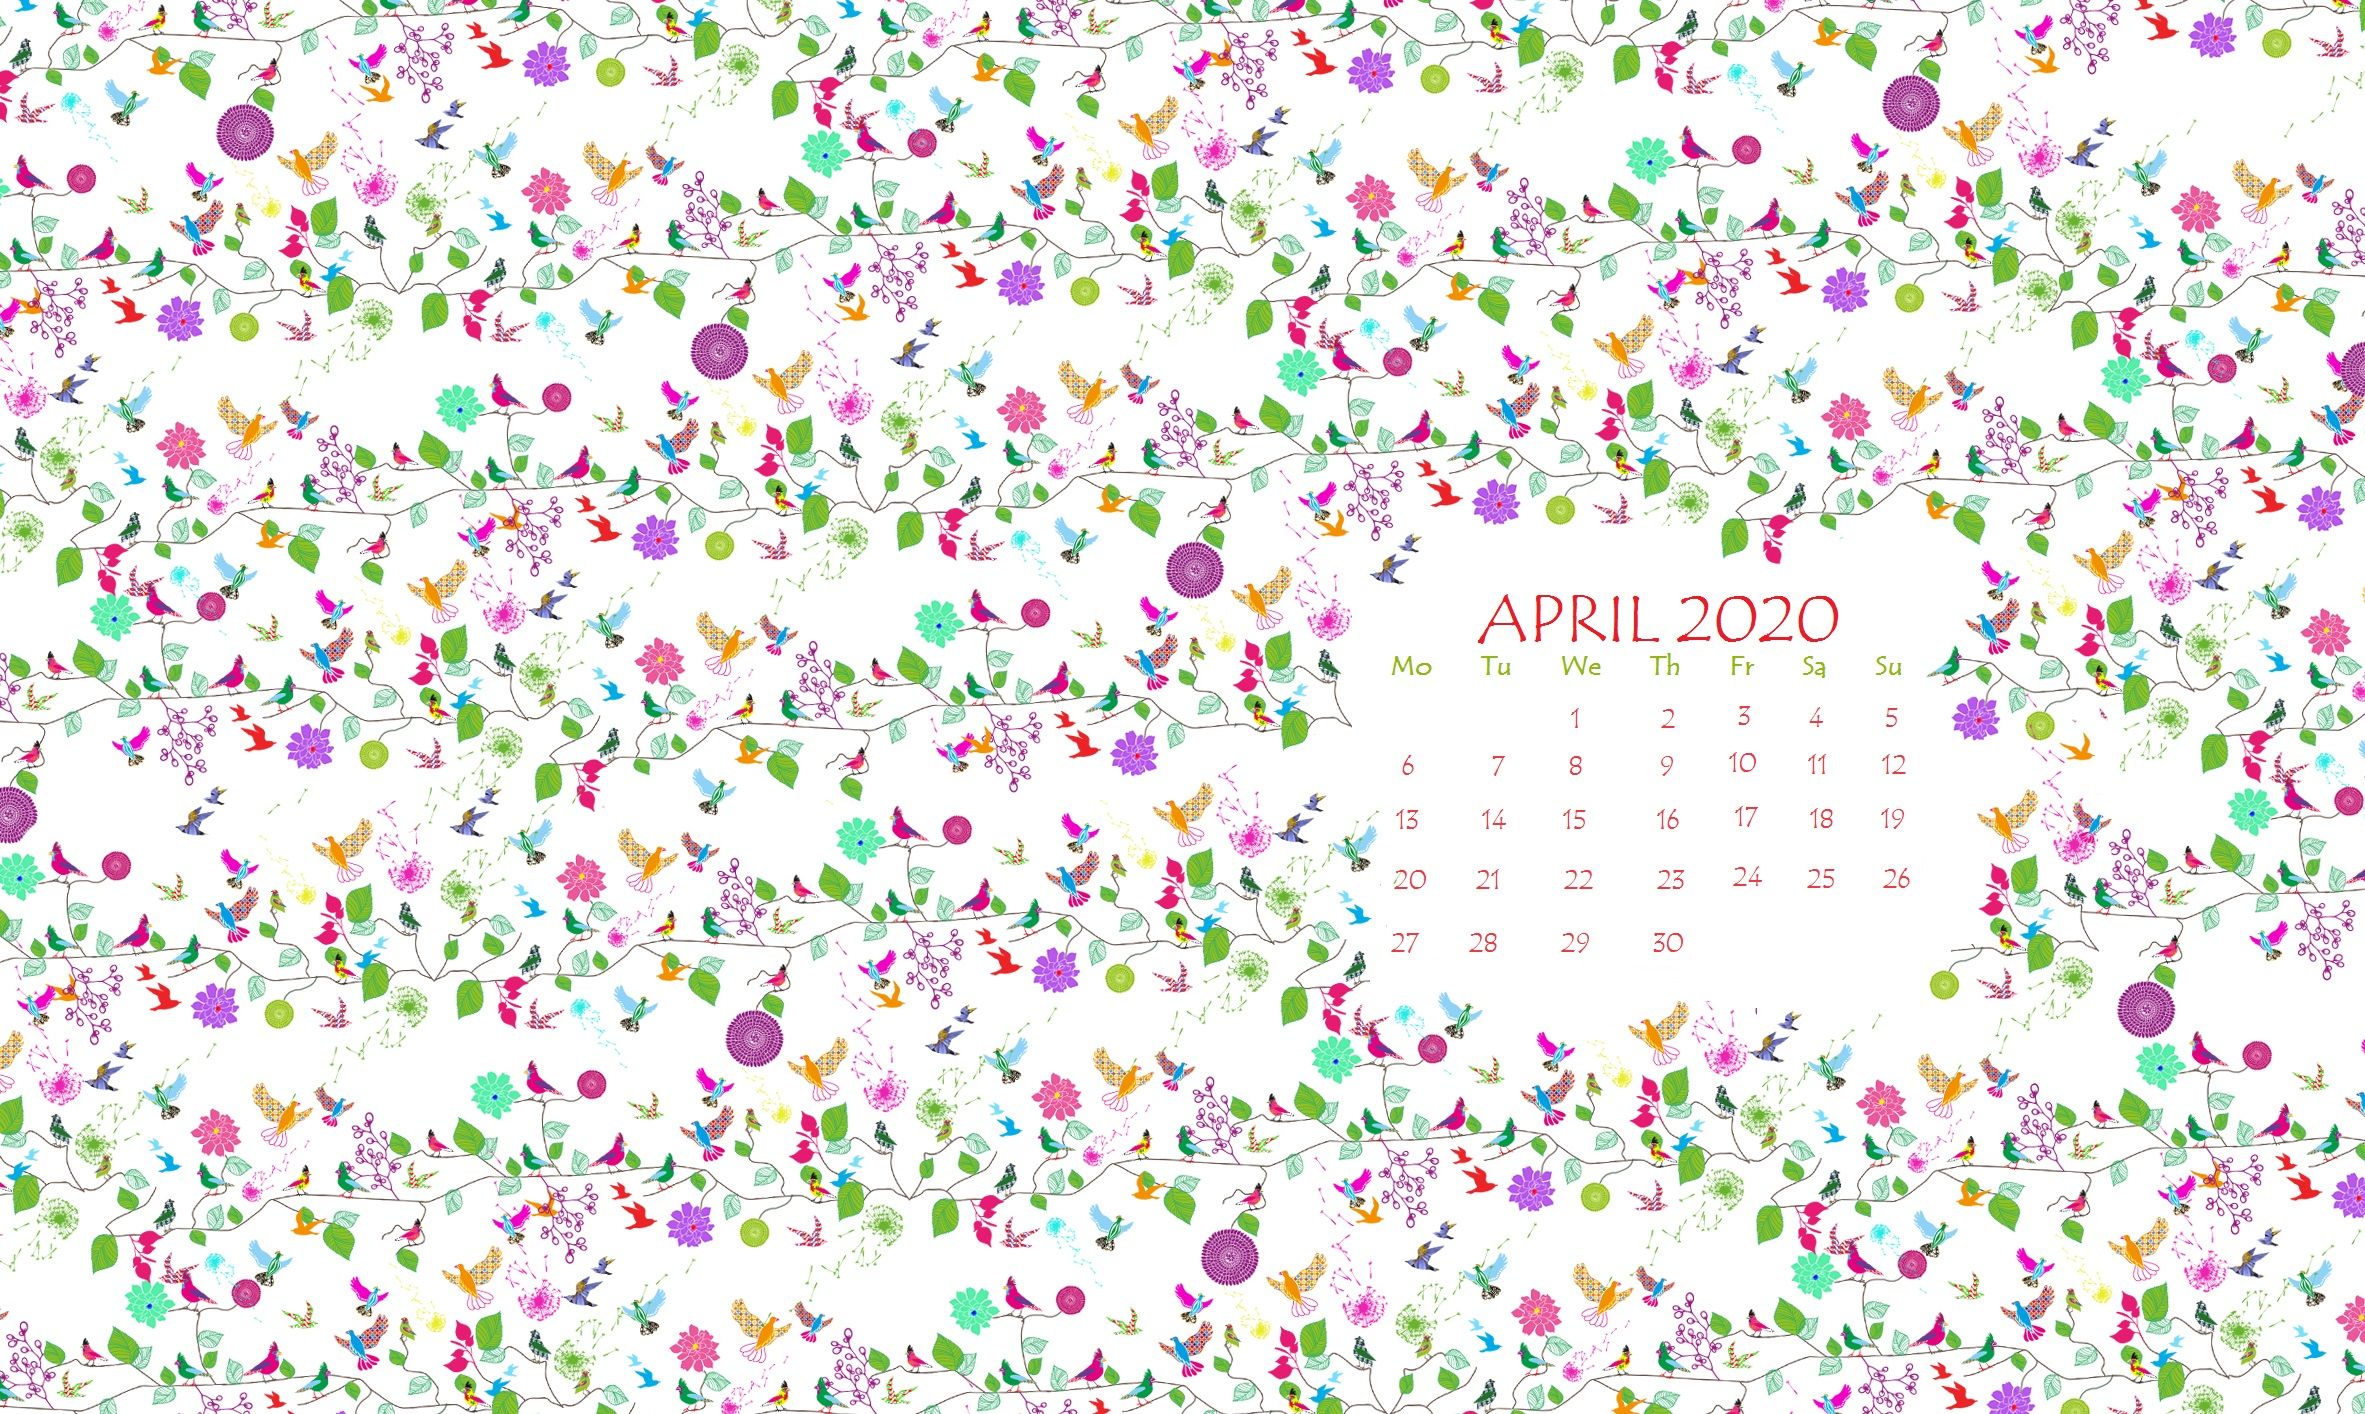 April 2020 Calendar Wallpaper